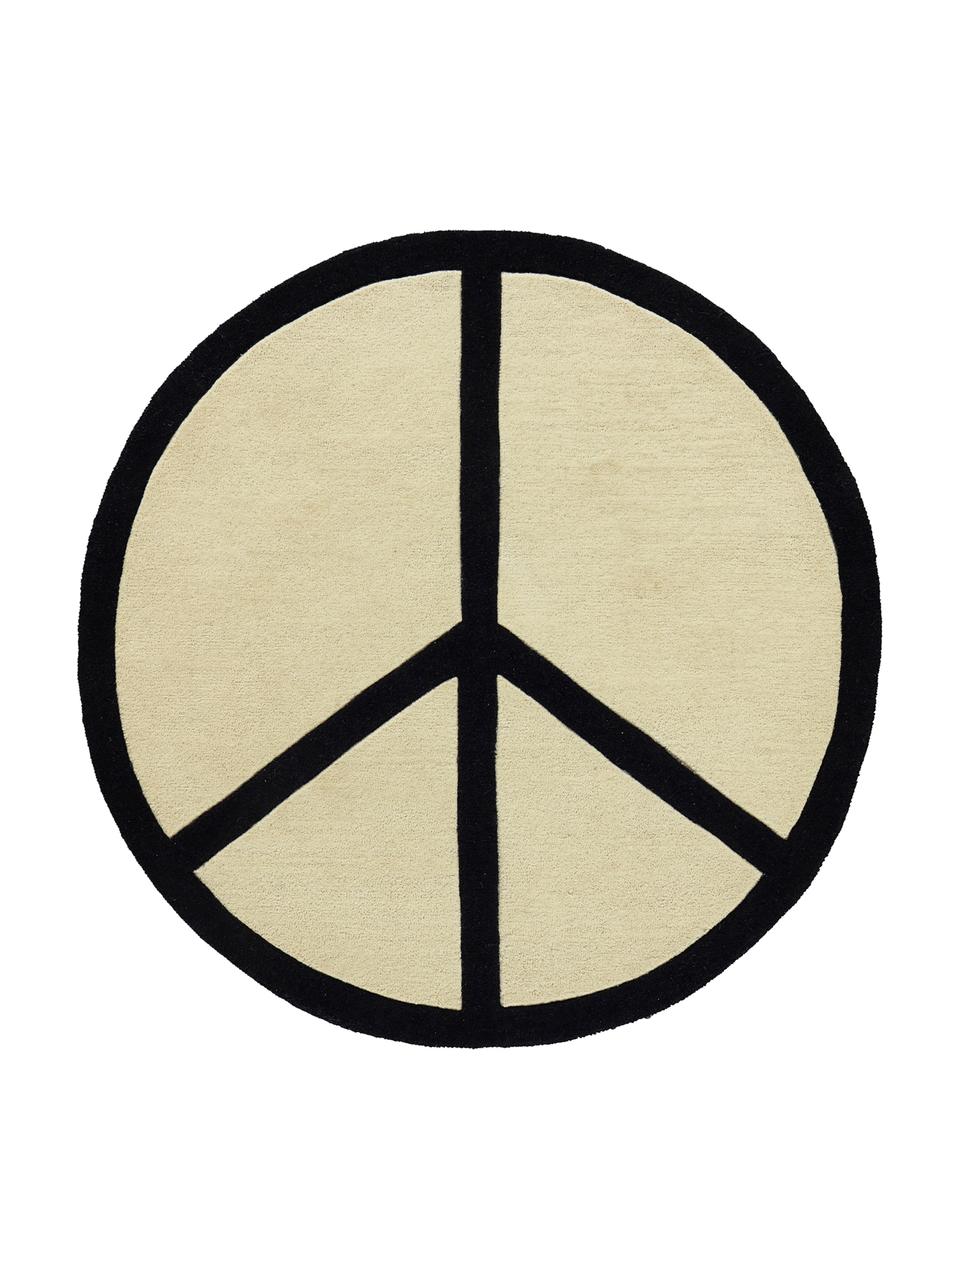 Tappeto rotondo in lana Peace Out, Lana, Color crema, nero, Ø 120 cm